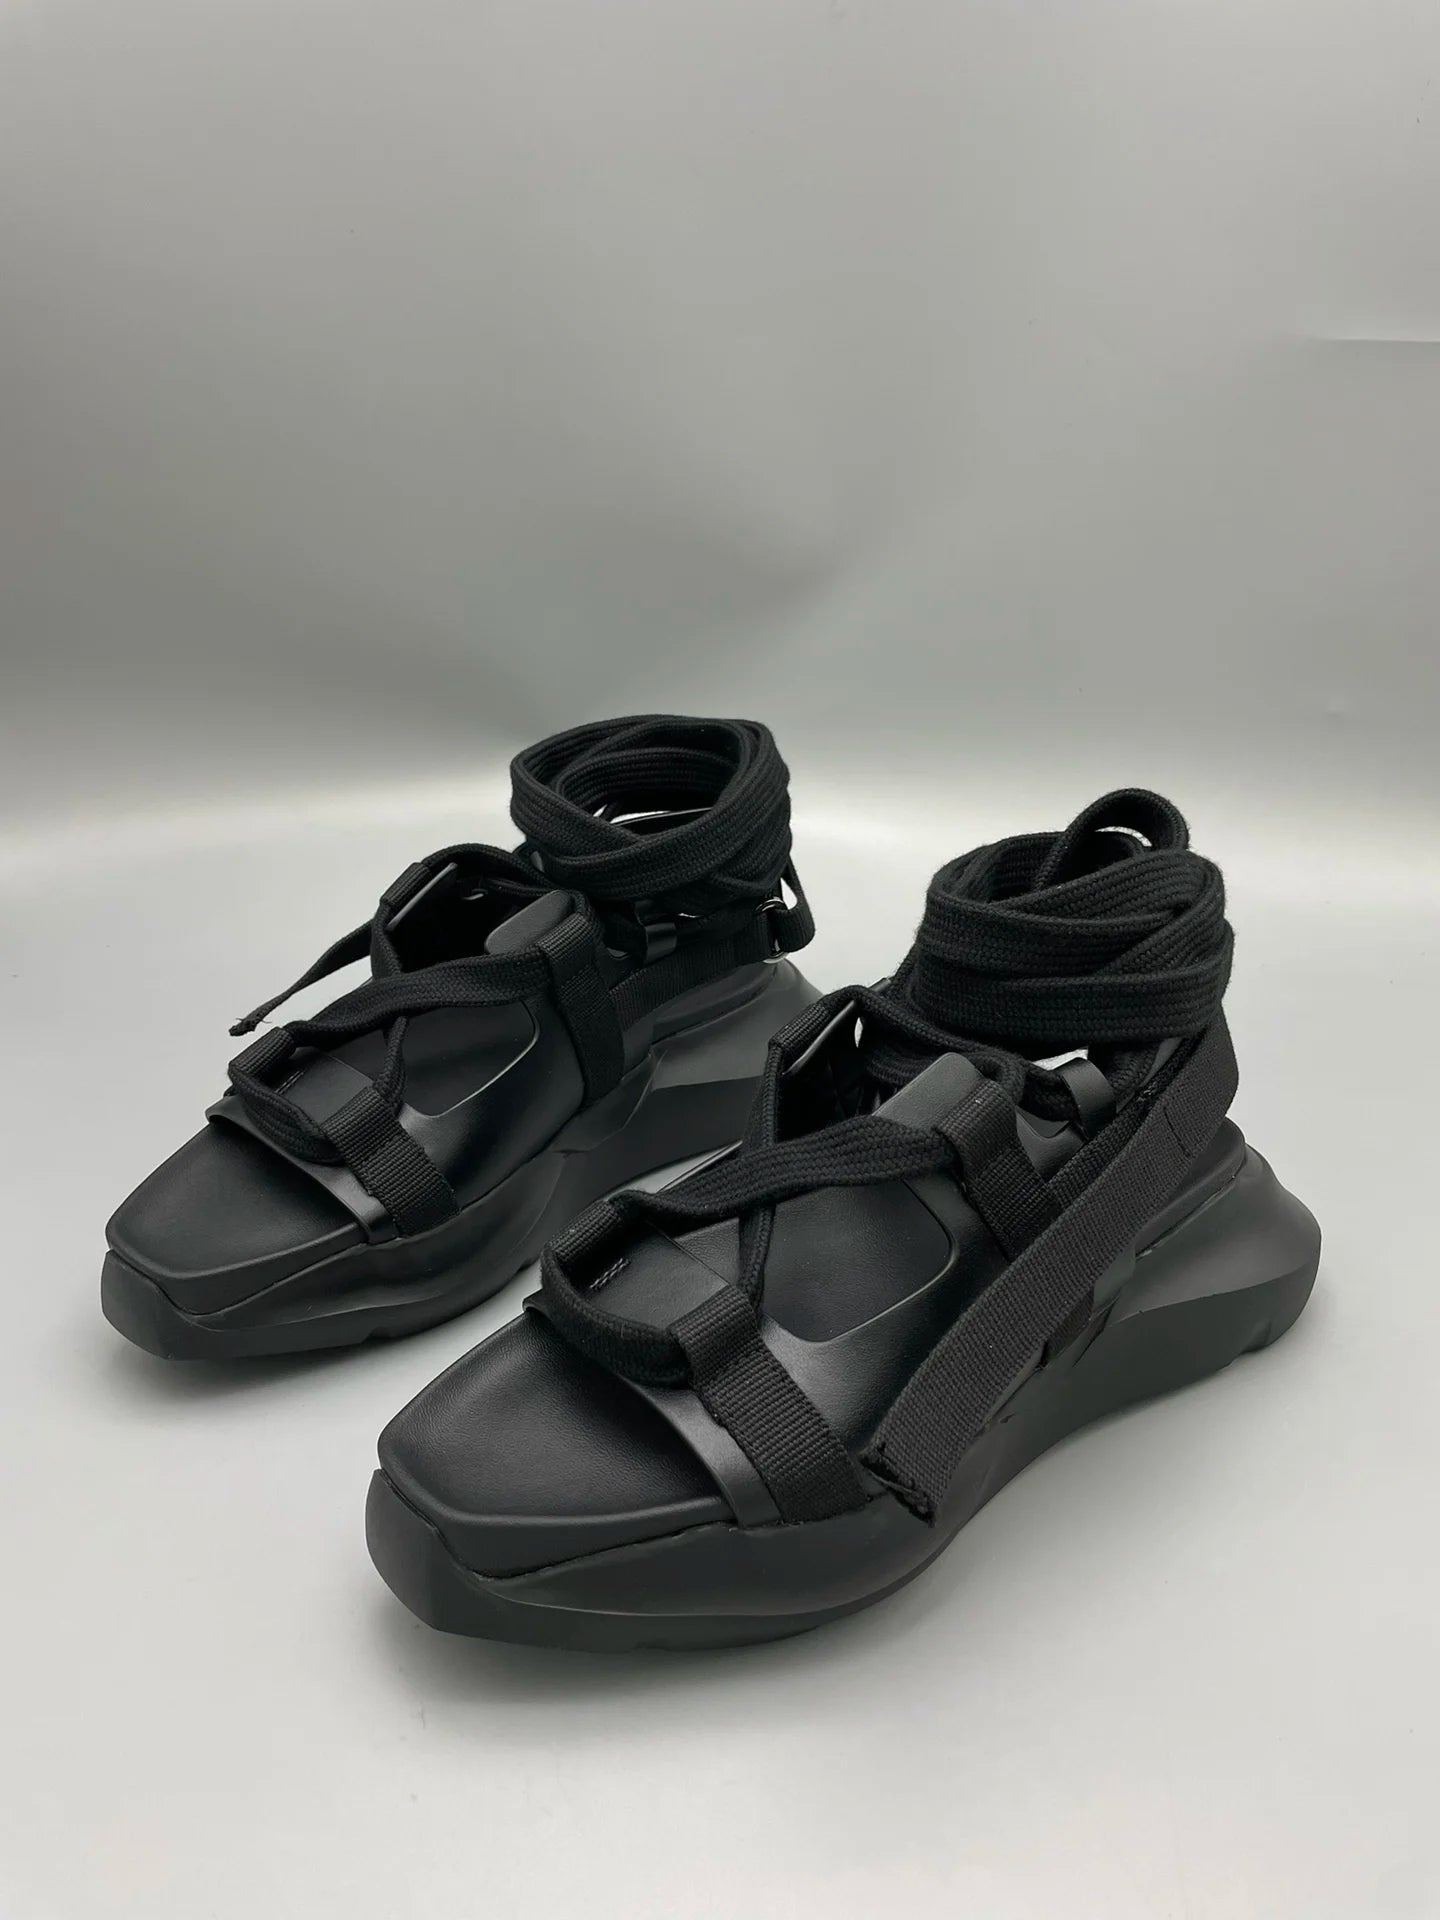 Men Sandals Platform Black Casual Rome Gladiator Leather  Summer Shoes